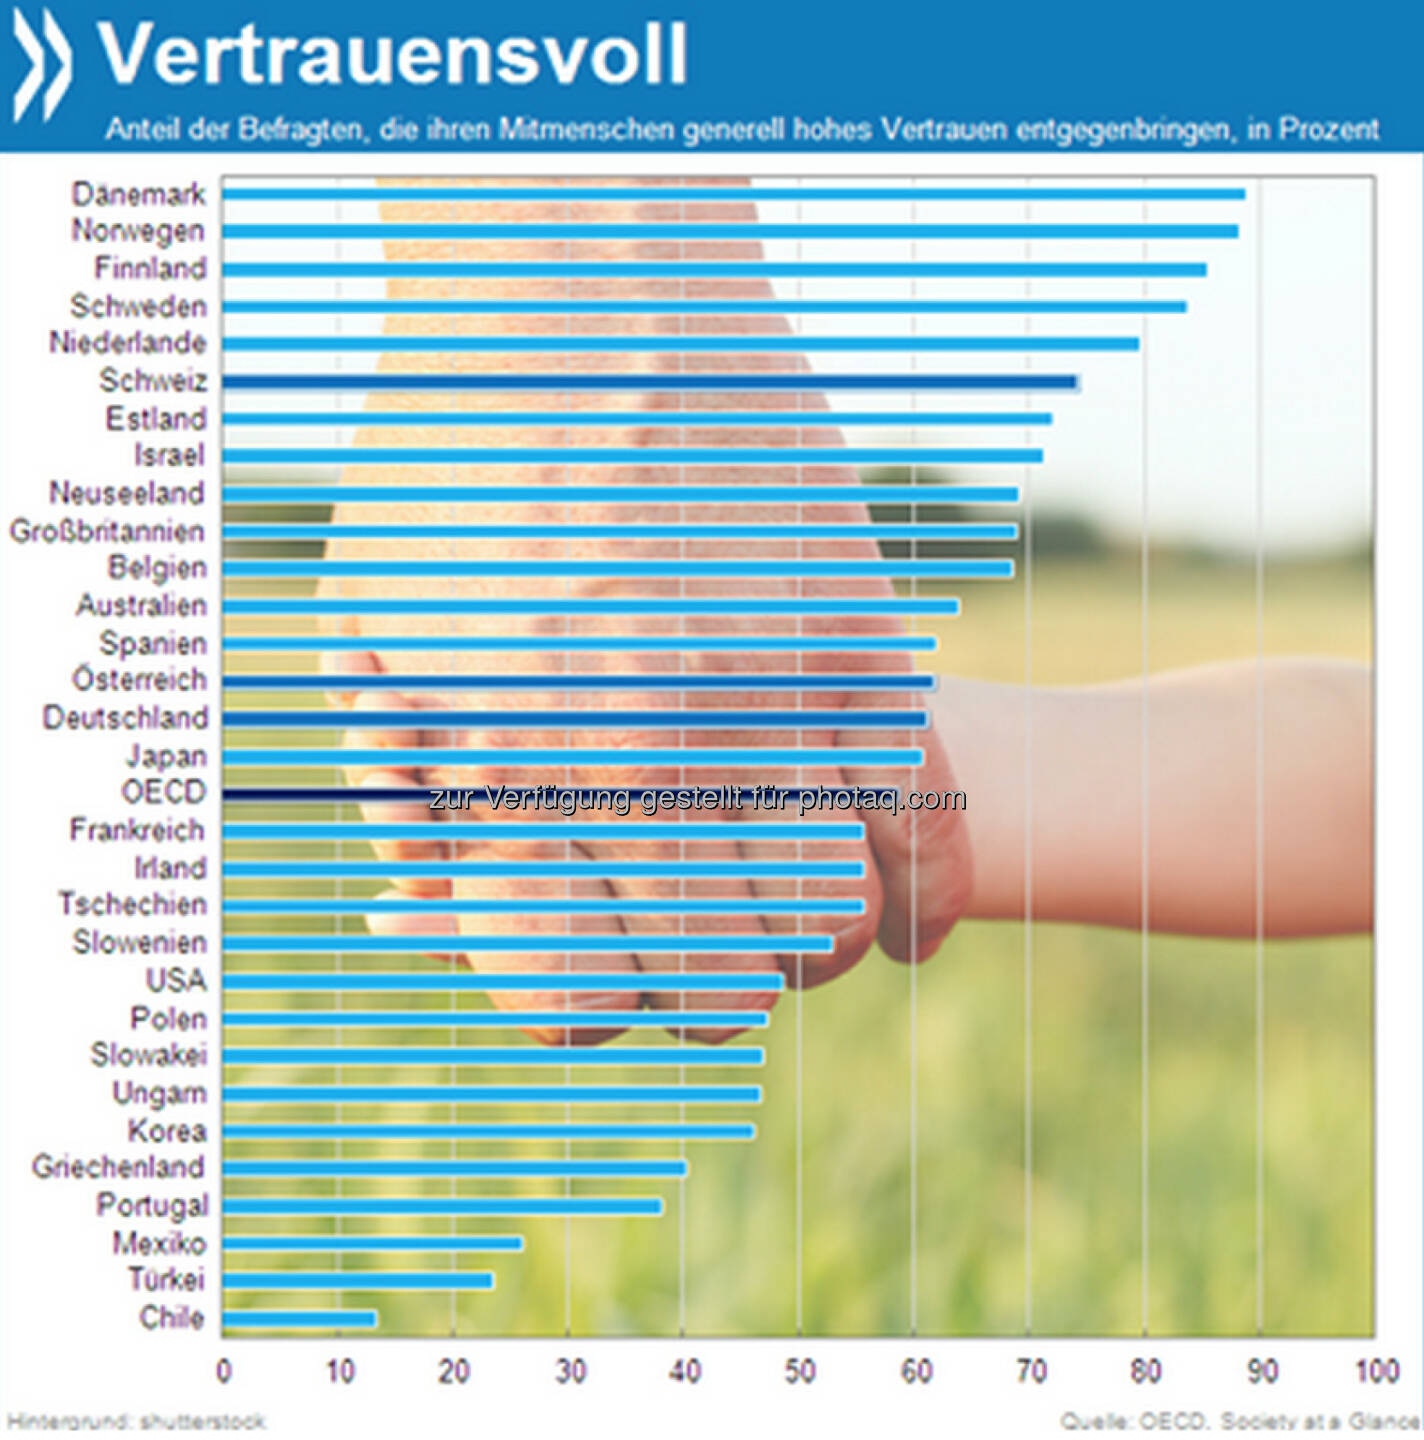 Fest der Liebe – und des Vertrauens? 59 Prozent der Menschen im OECD-Raum vertrauen ihren Mitmenschen. In den nordischen Ländern sind es sogar über 80 Prozent. Deutsche und Österreich liegen nur knapp über dem Durchschnitt. 

Mehr unter http://bit.ly/199yQfJ (Society at a Glance, S.91)